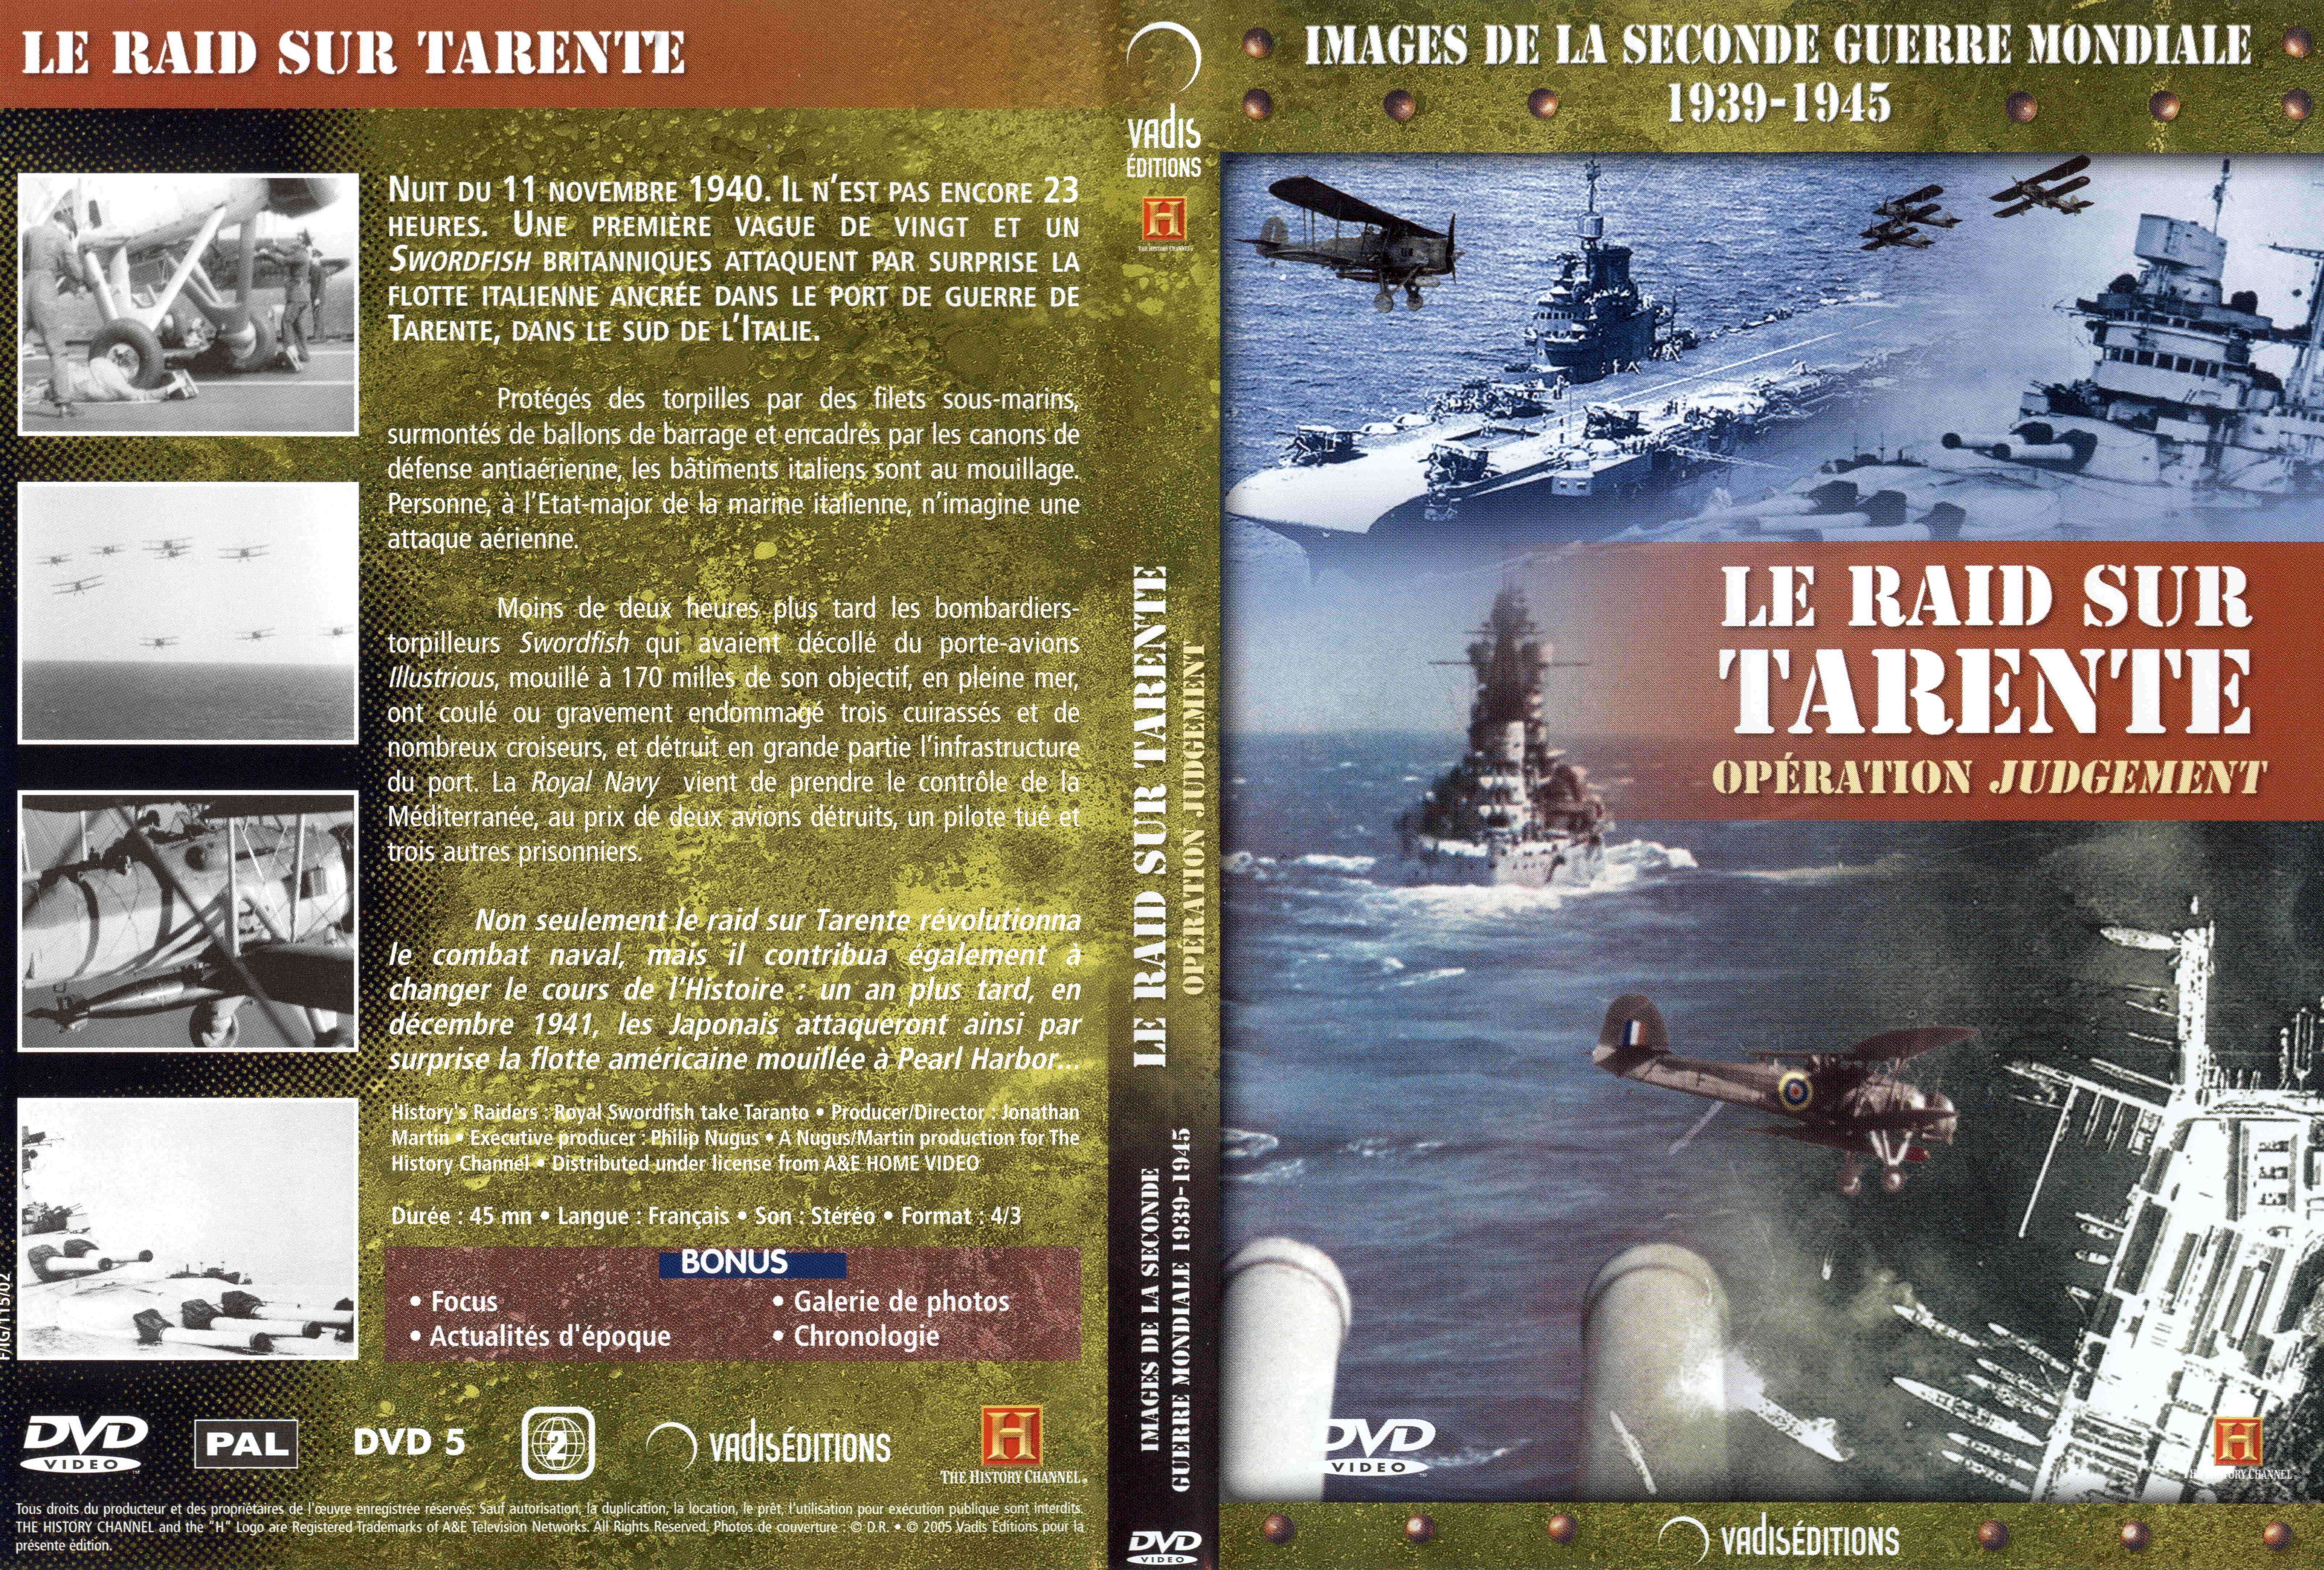 Jaquette DVD Images de la seconde guerre mondiale - Le raid de tarente